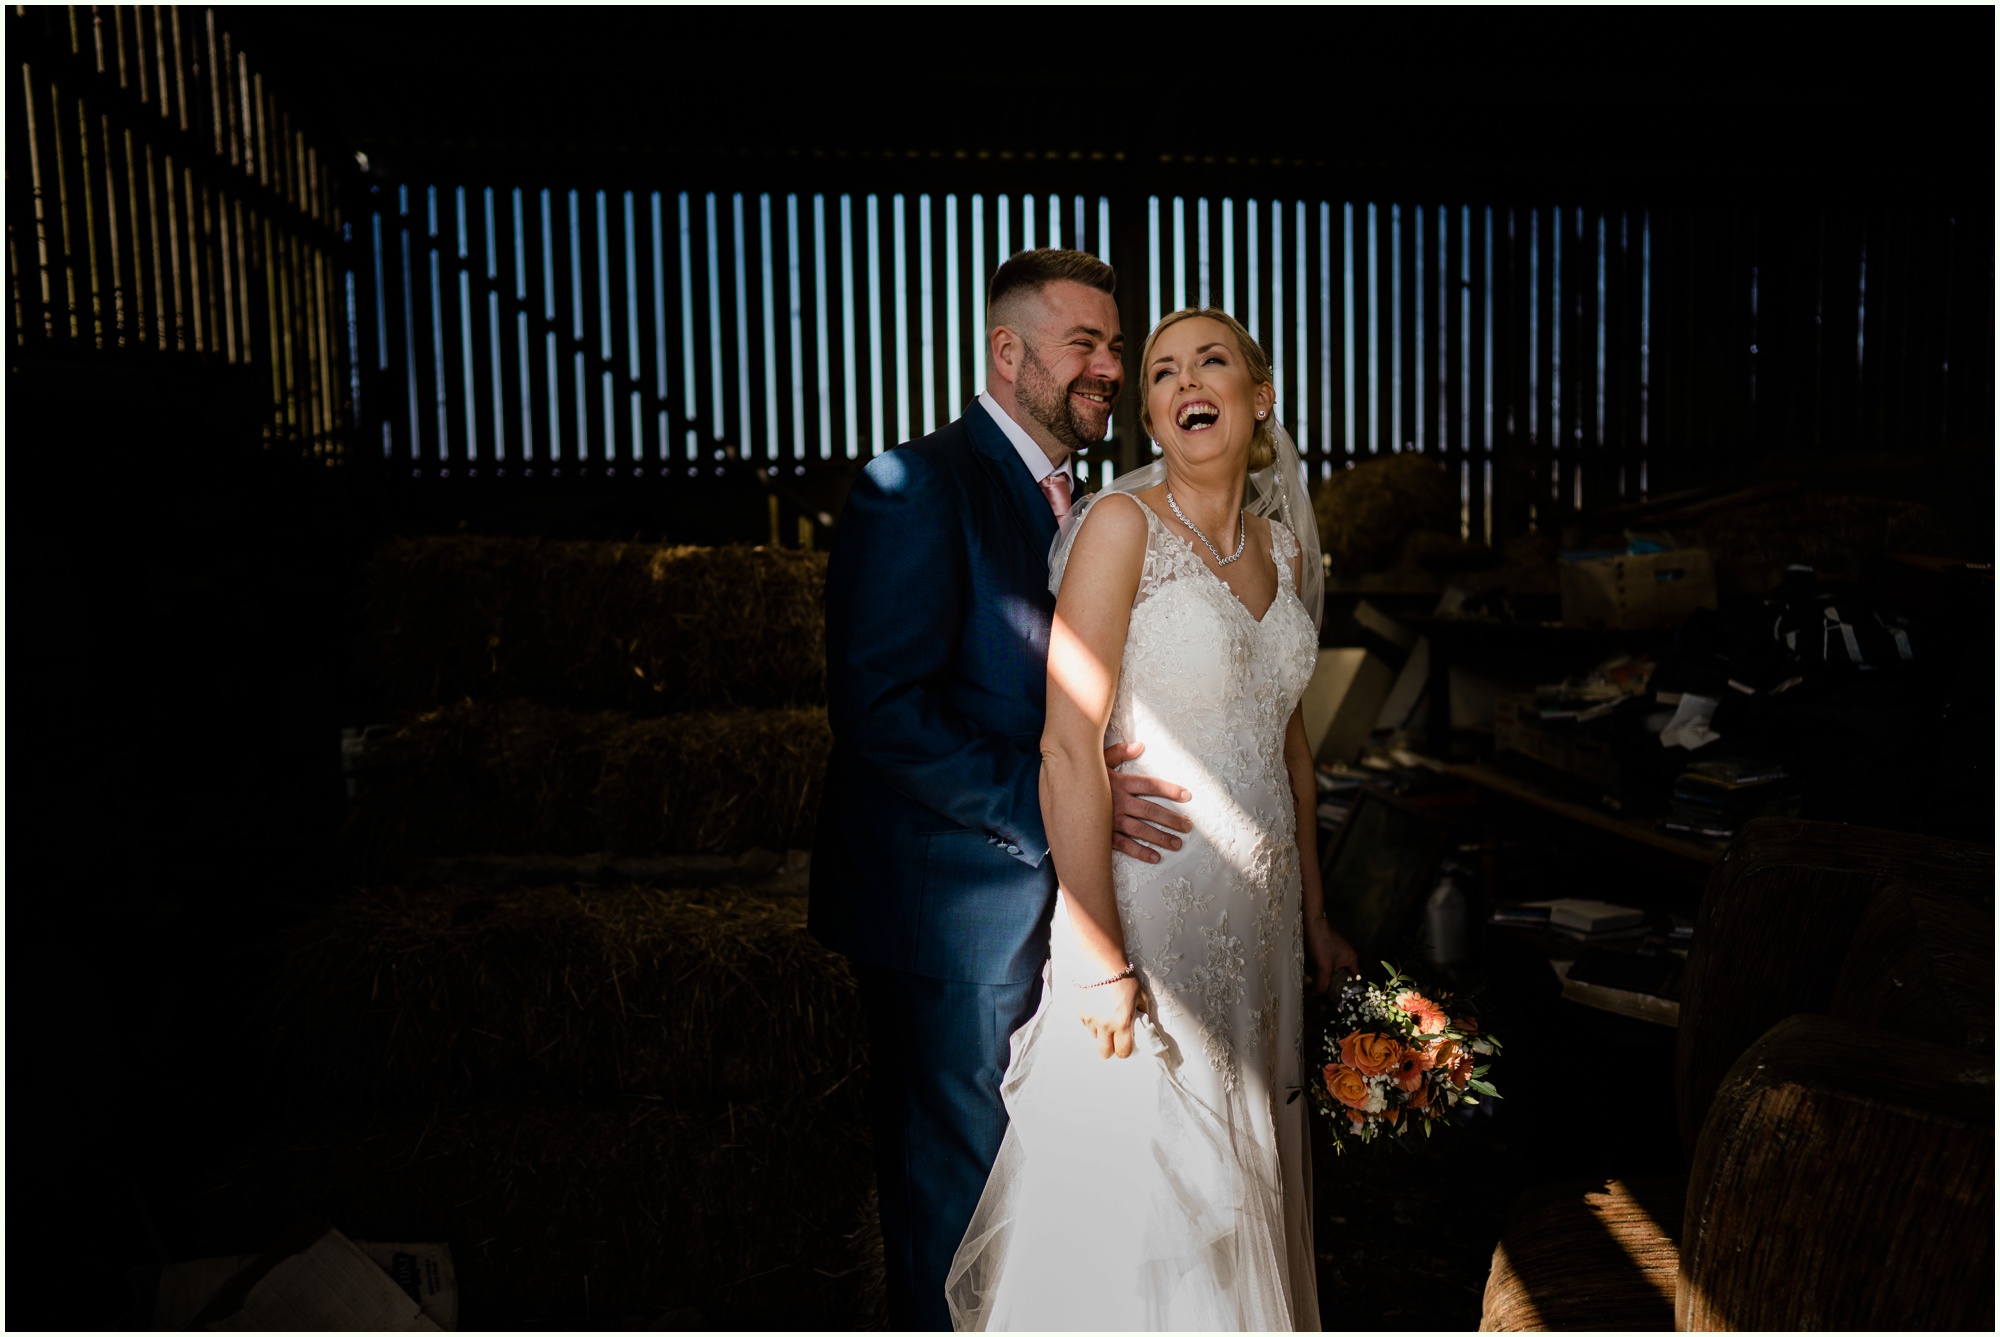 Wunderschöne Hochzeit in Cornwall in Trevenna Barns mit Younger Photography Program